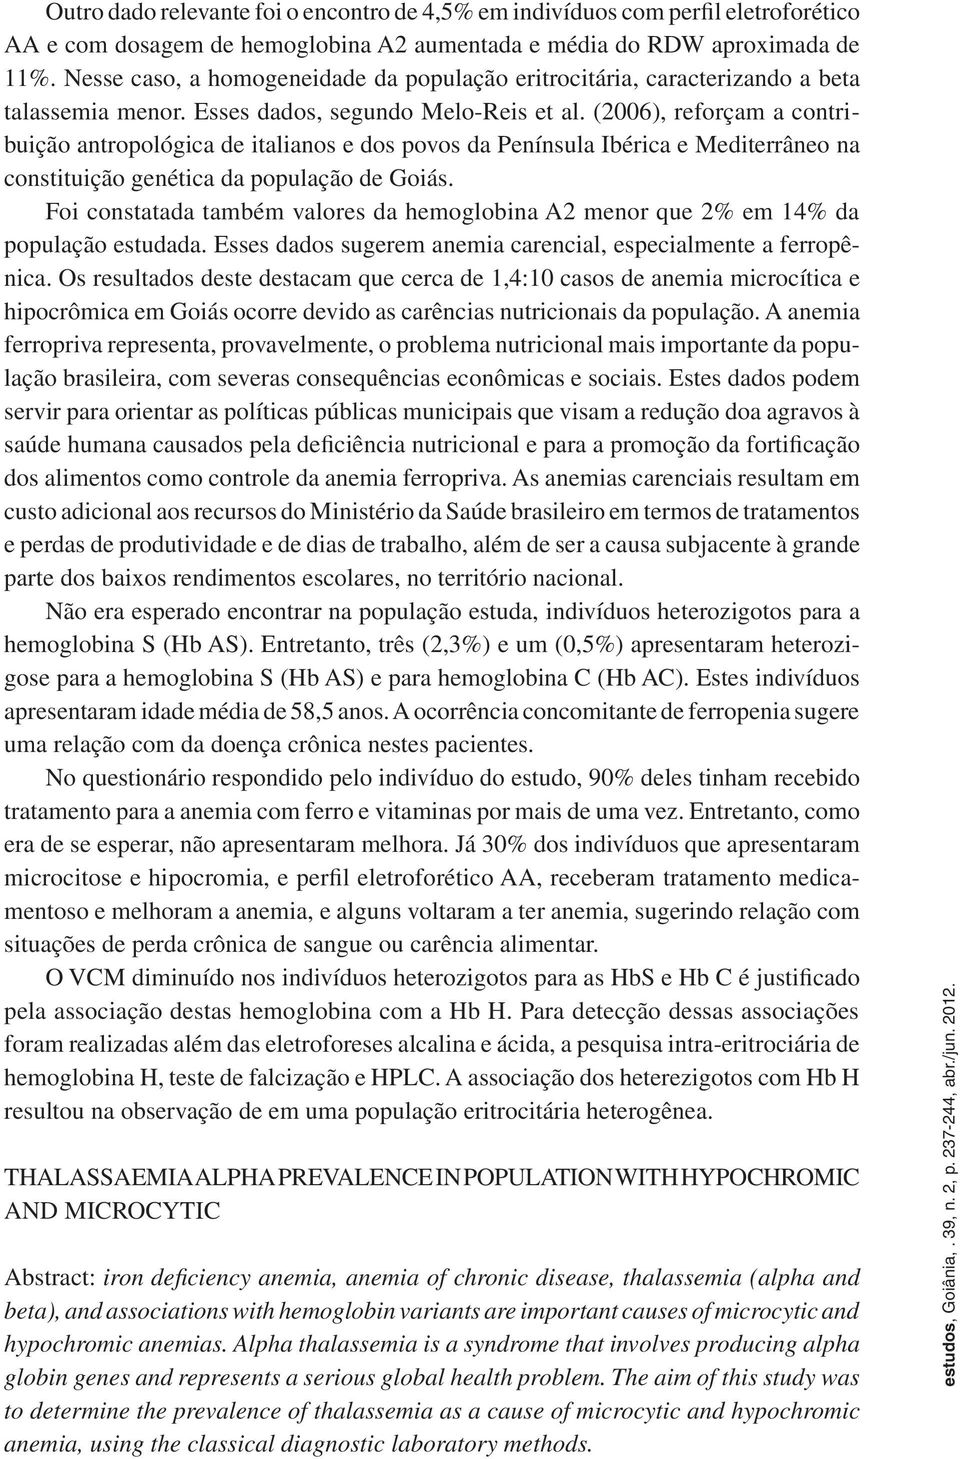 (2006), reforçam a contribuição antropológica de italianos e dos povos da Península Ibérica e Mediterrâneo na constituição genética da população de Goiás.